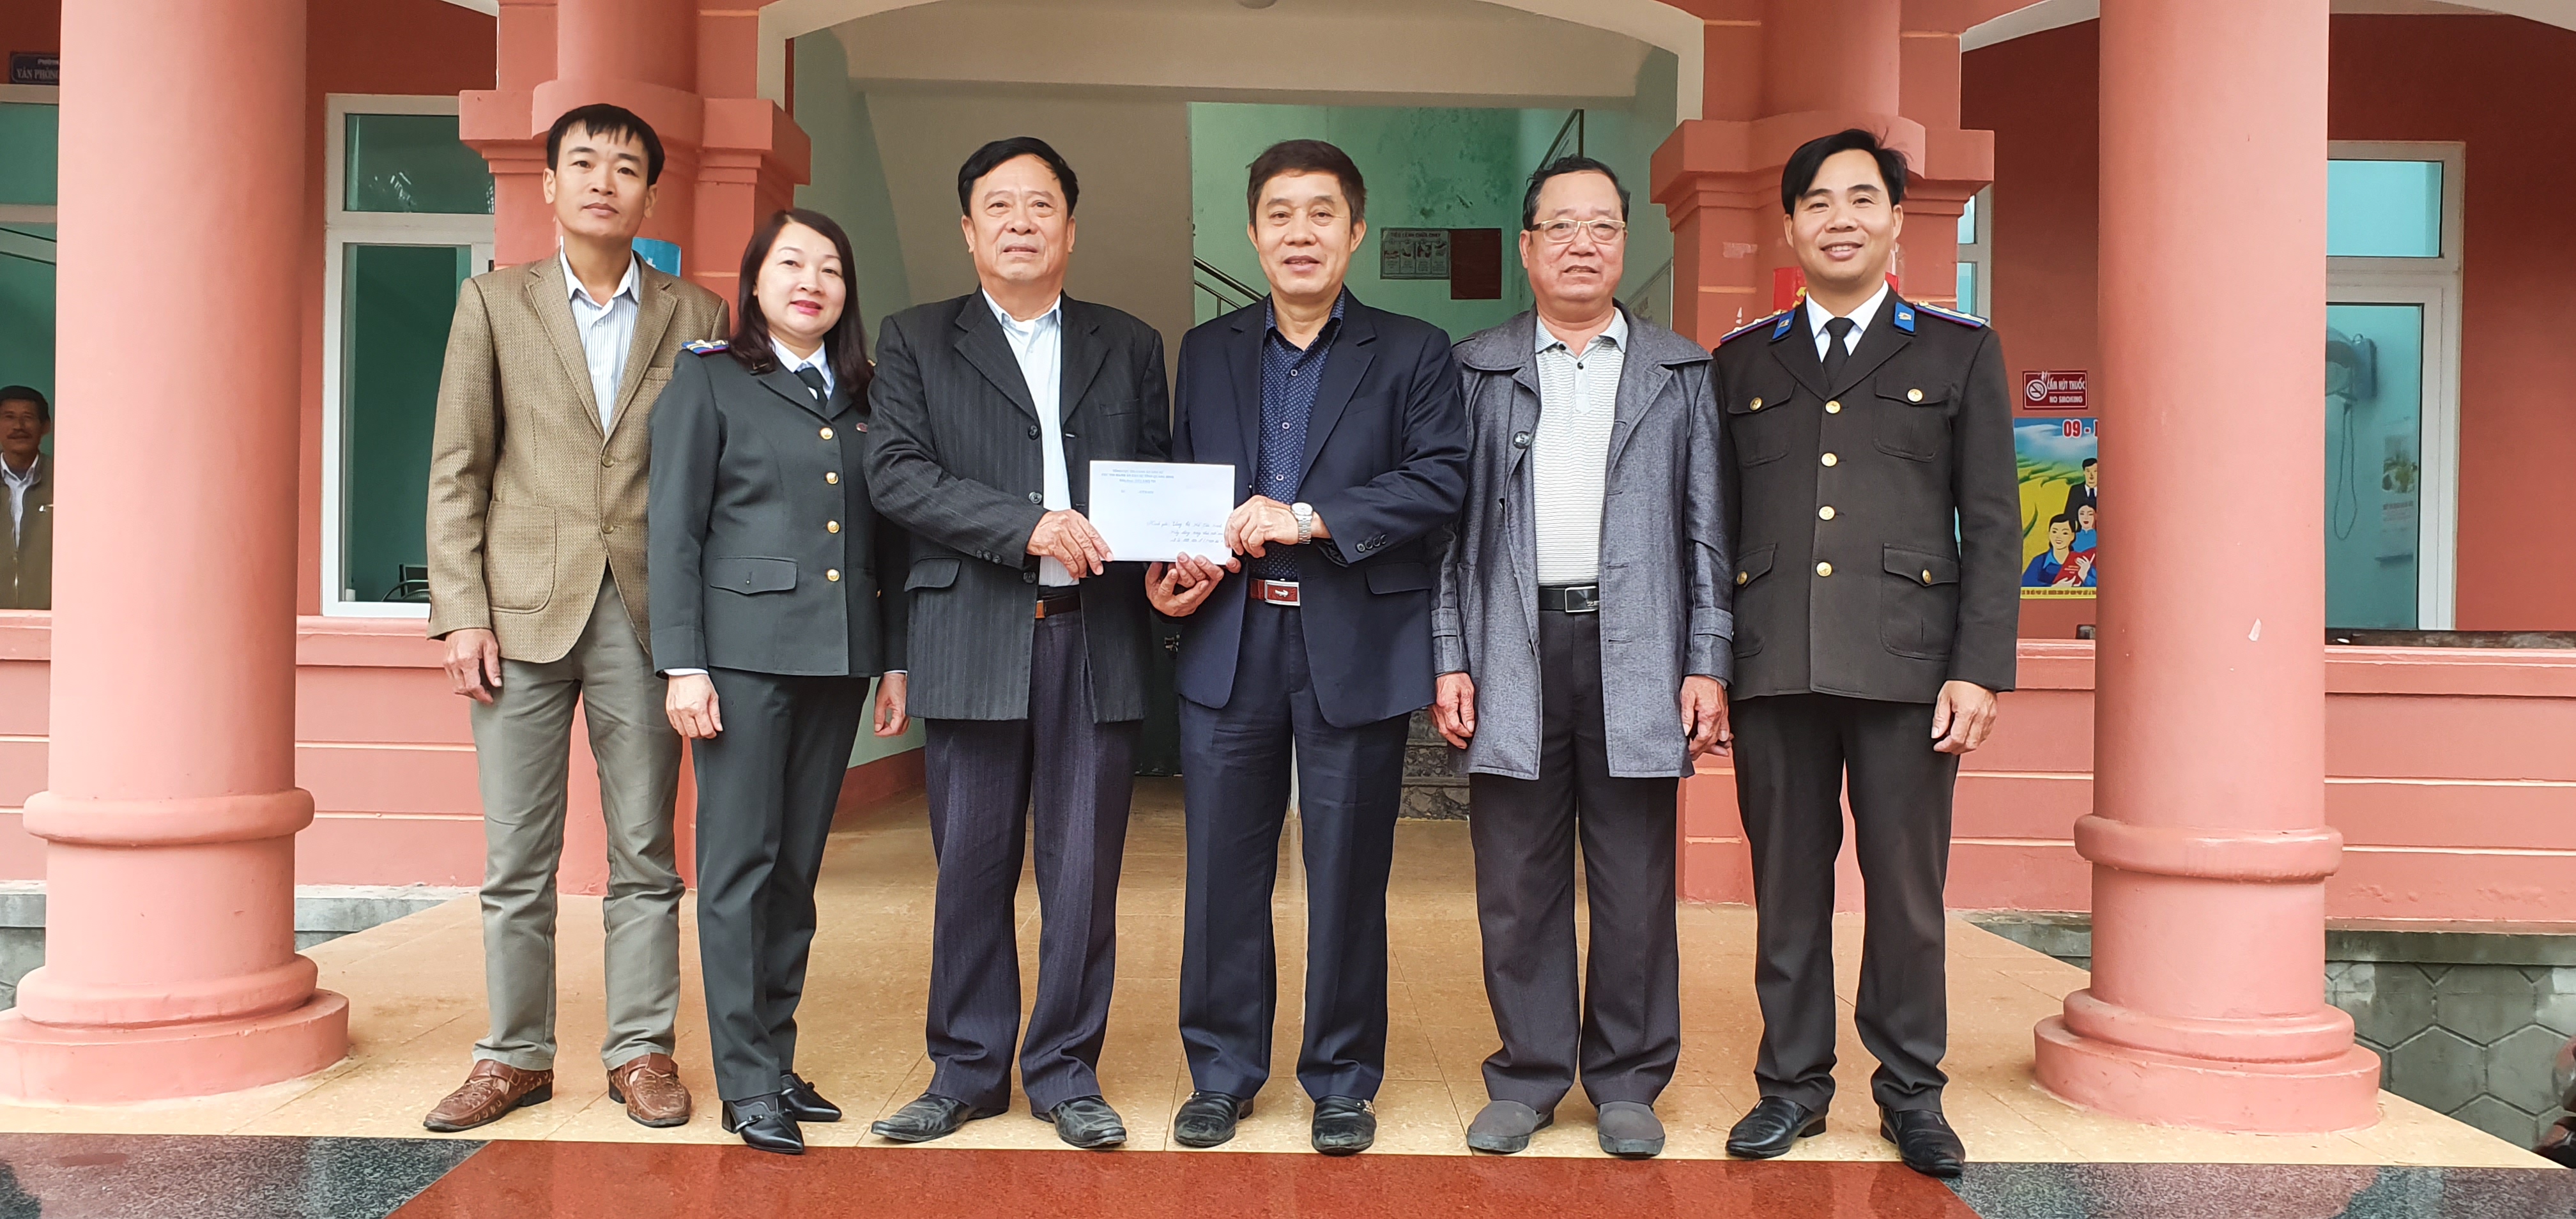 Cục Thi hành án dân sự tỉnh Quảng Bình thực hiện phong trào thi đua: “Ngành Tư pháp Chung sức góp phần xây dựng nông thôn mới”